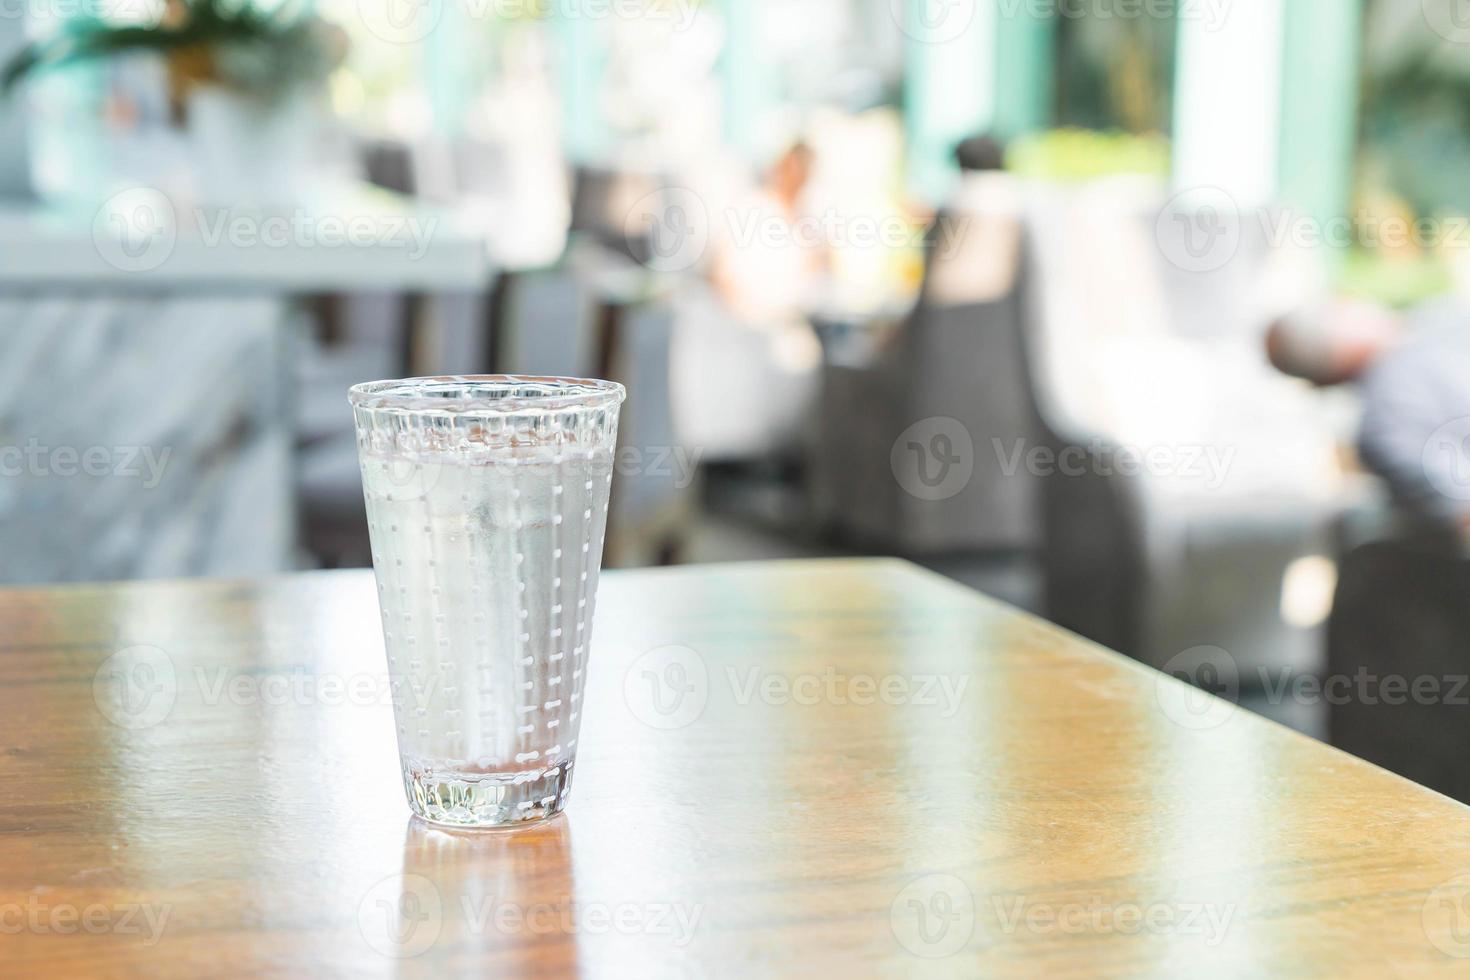 glas vatten på bordet foto